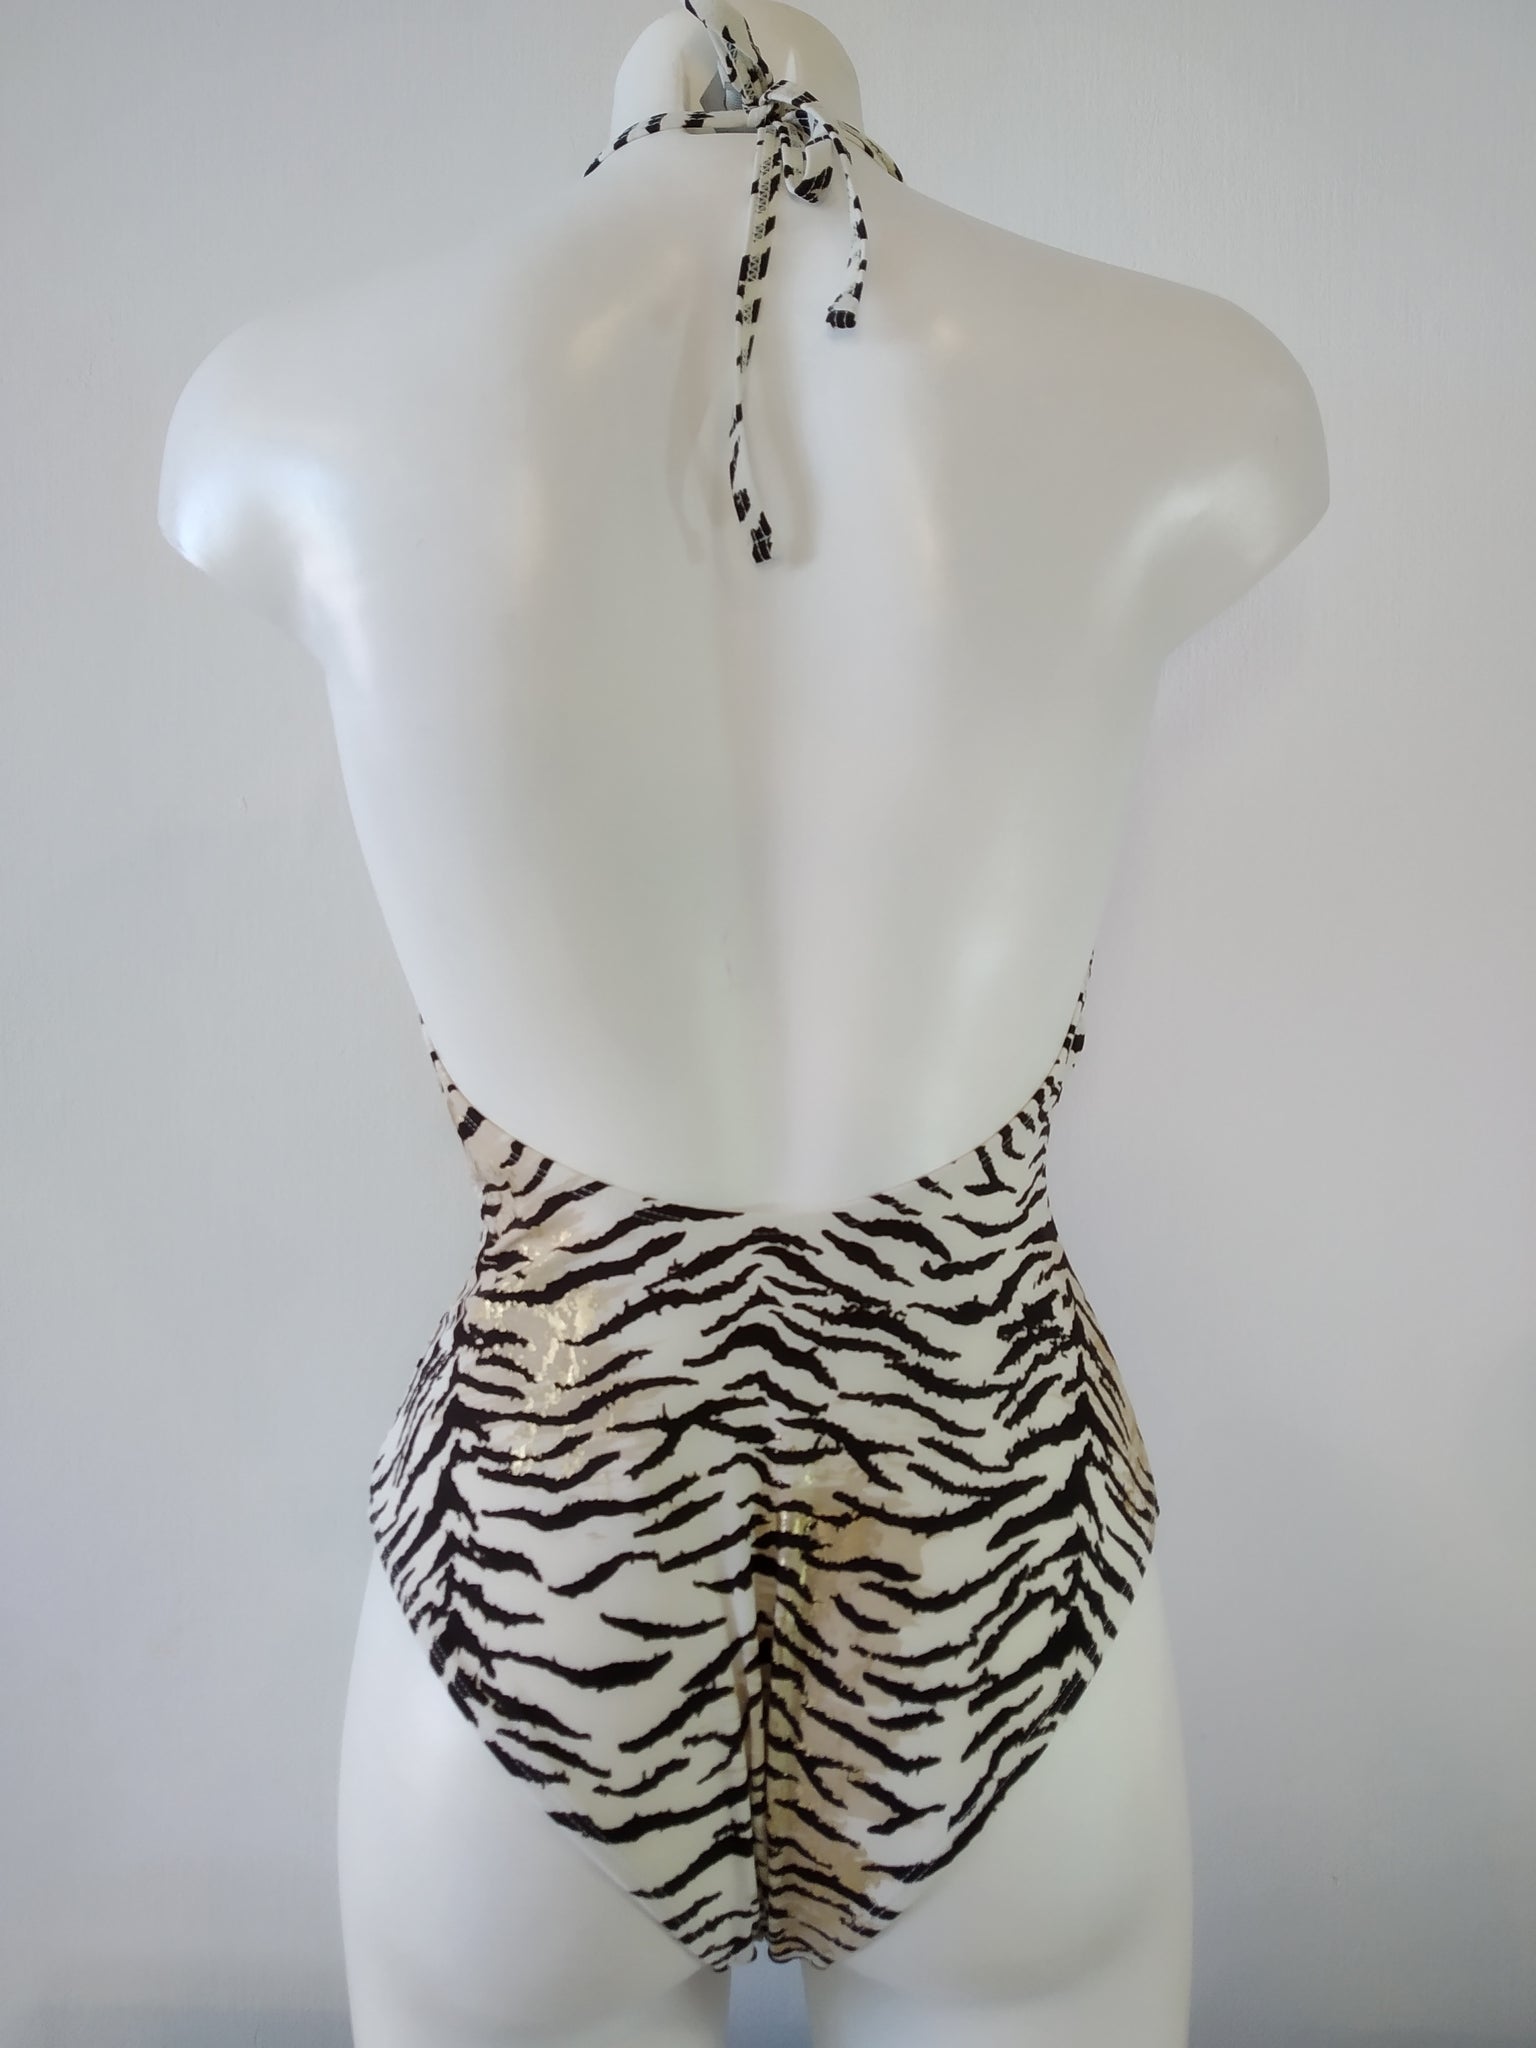 one piece swimsuit with tiger print,maillot de bain une piece imprime tigre,bañador de una pieza con estampado de tigre